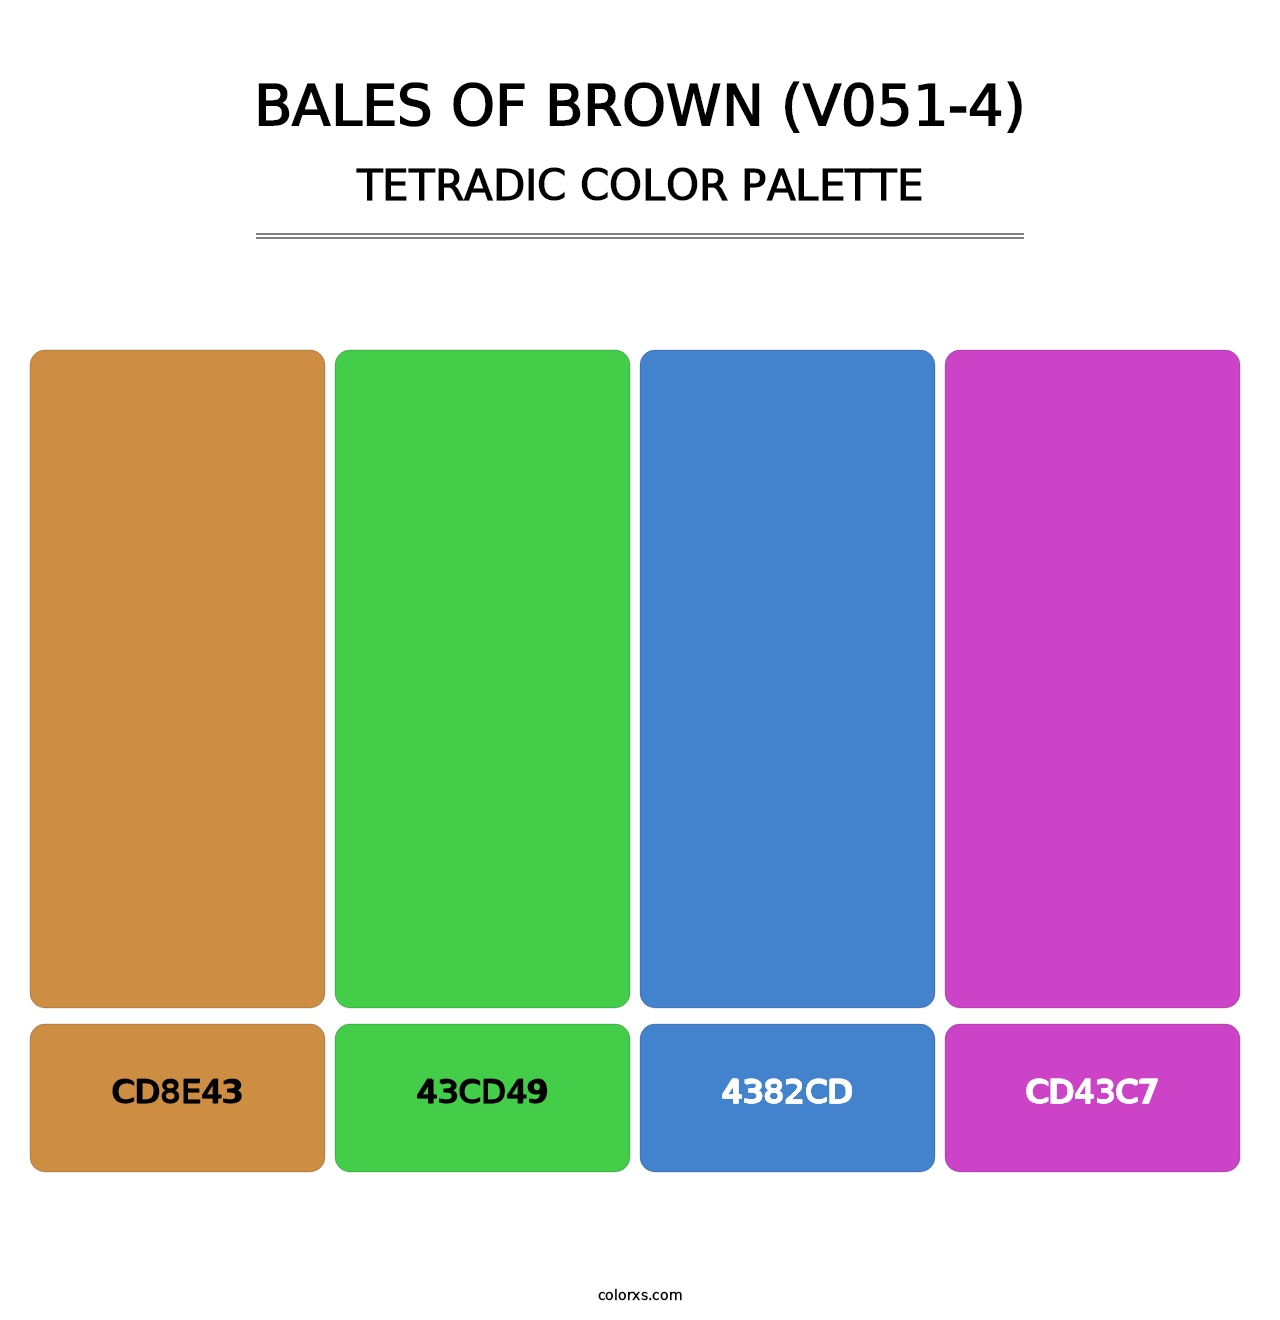 Bales of Brown (V051-4) - Tetradic Color Palette